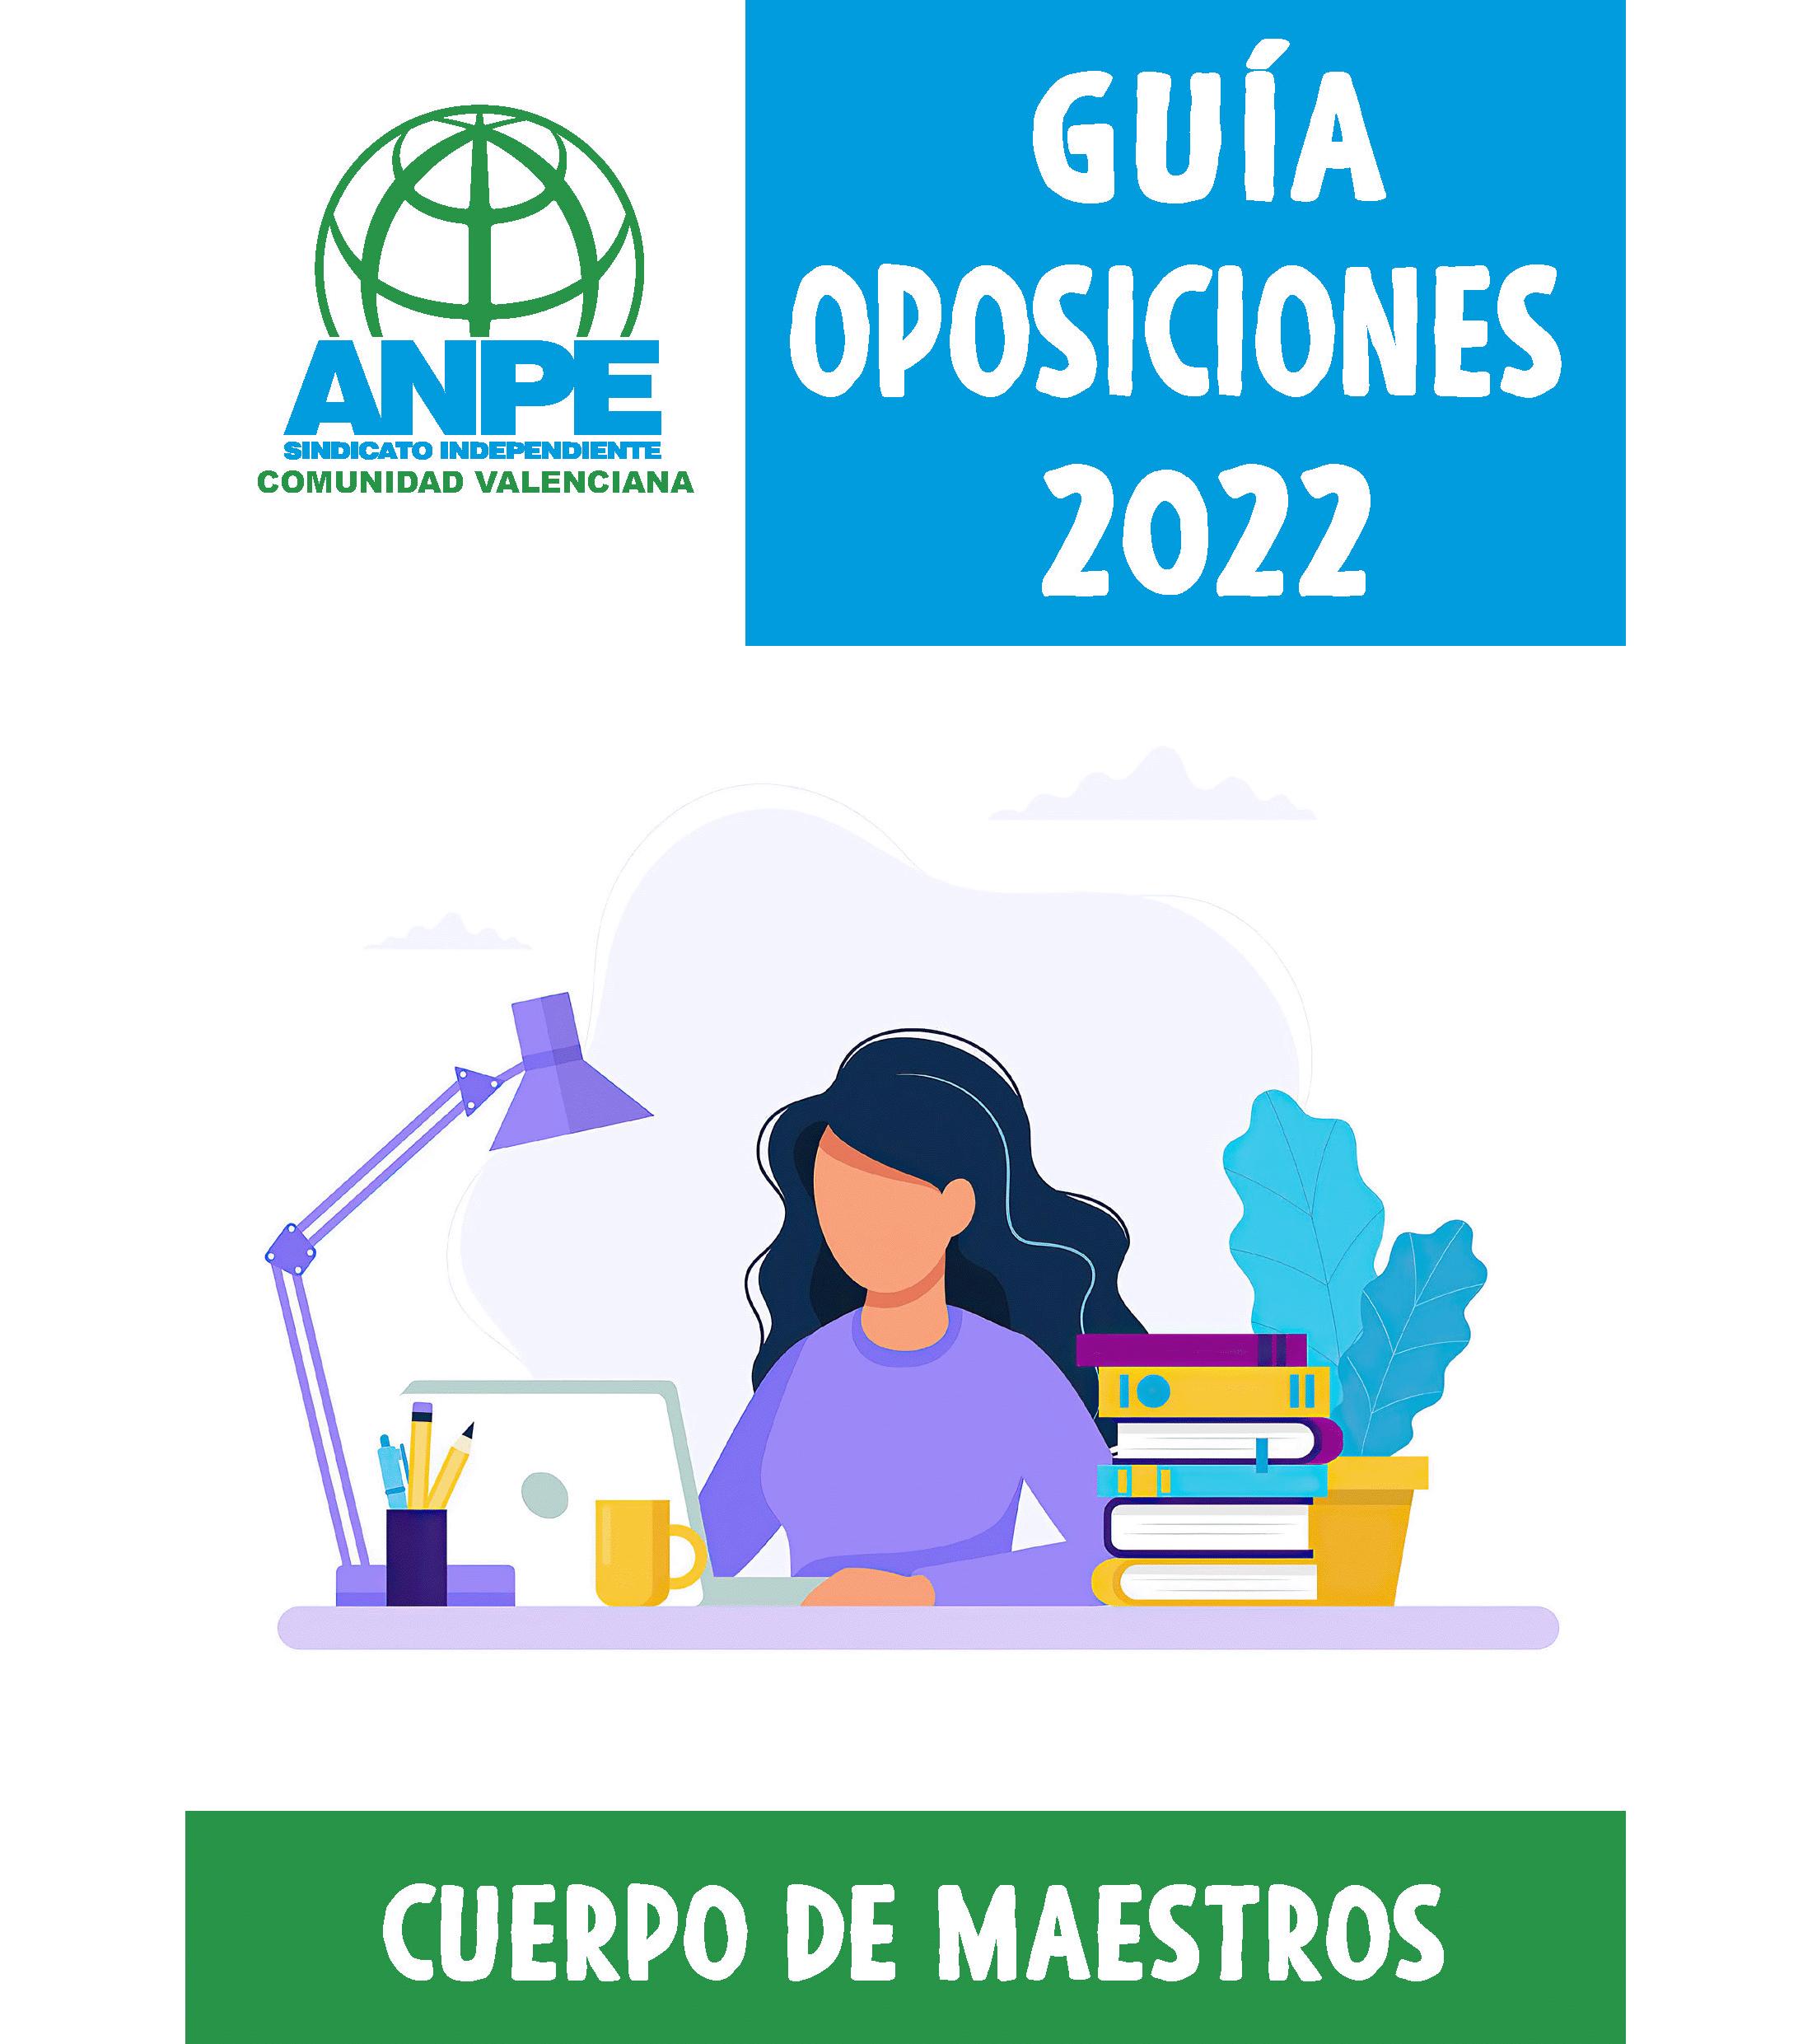 anpe_guia_oposiciones_2022_02